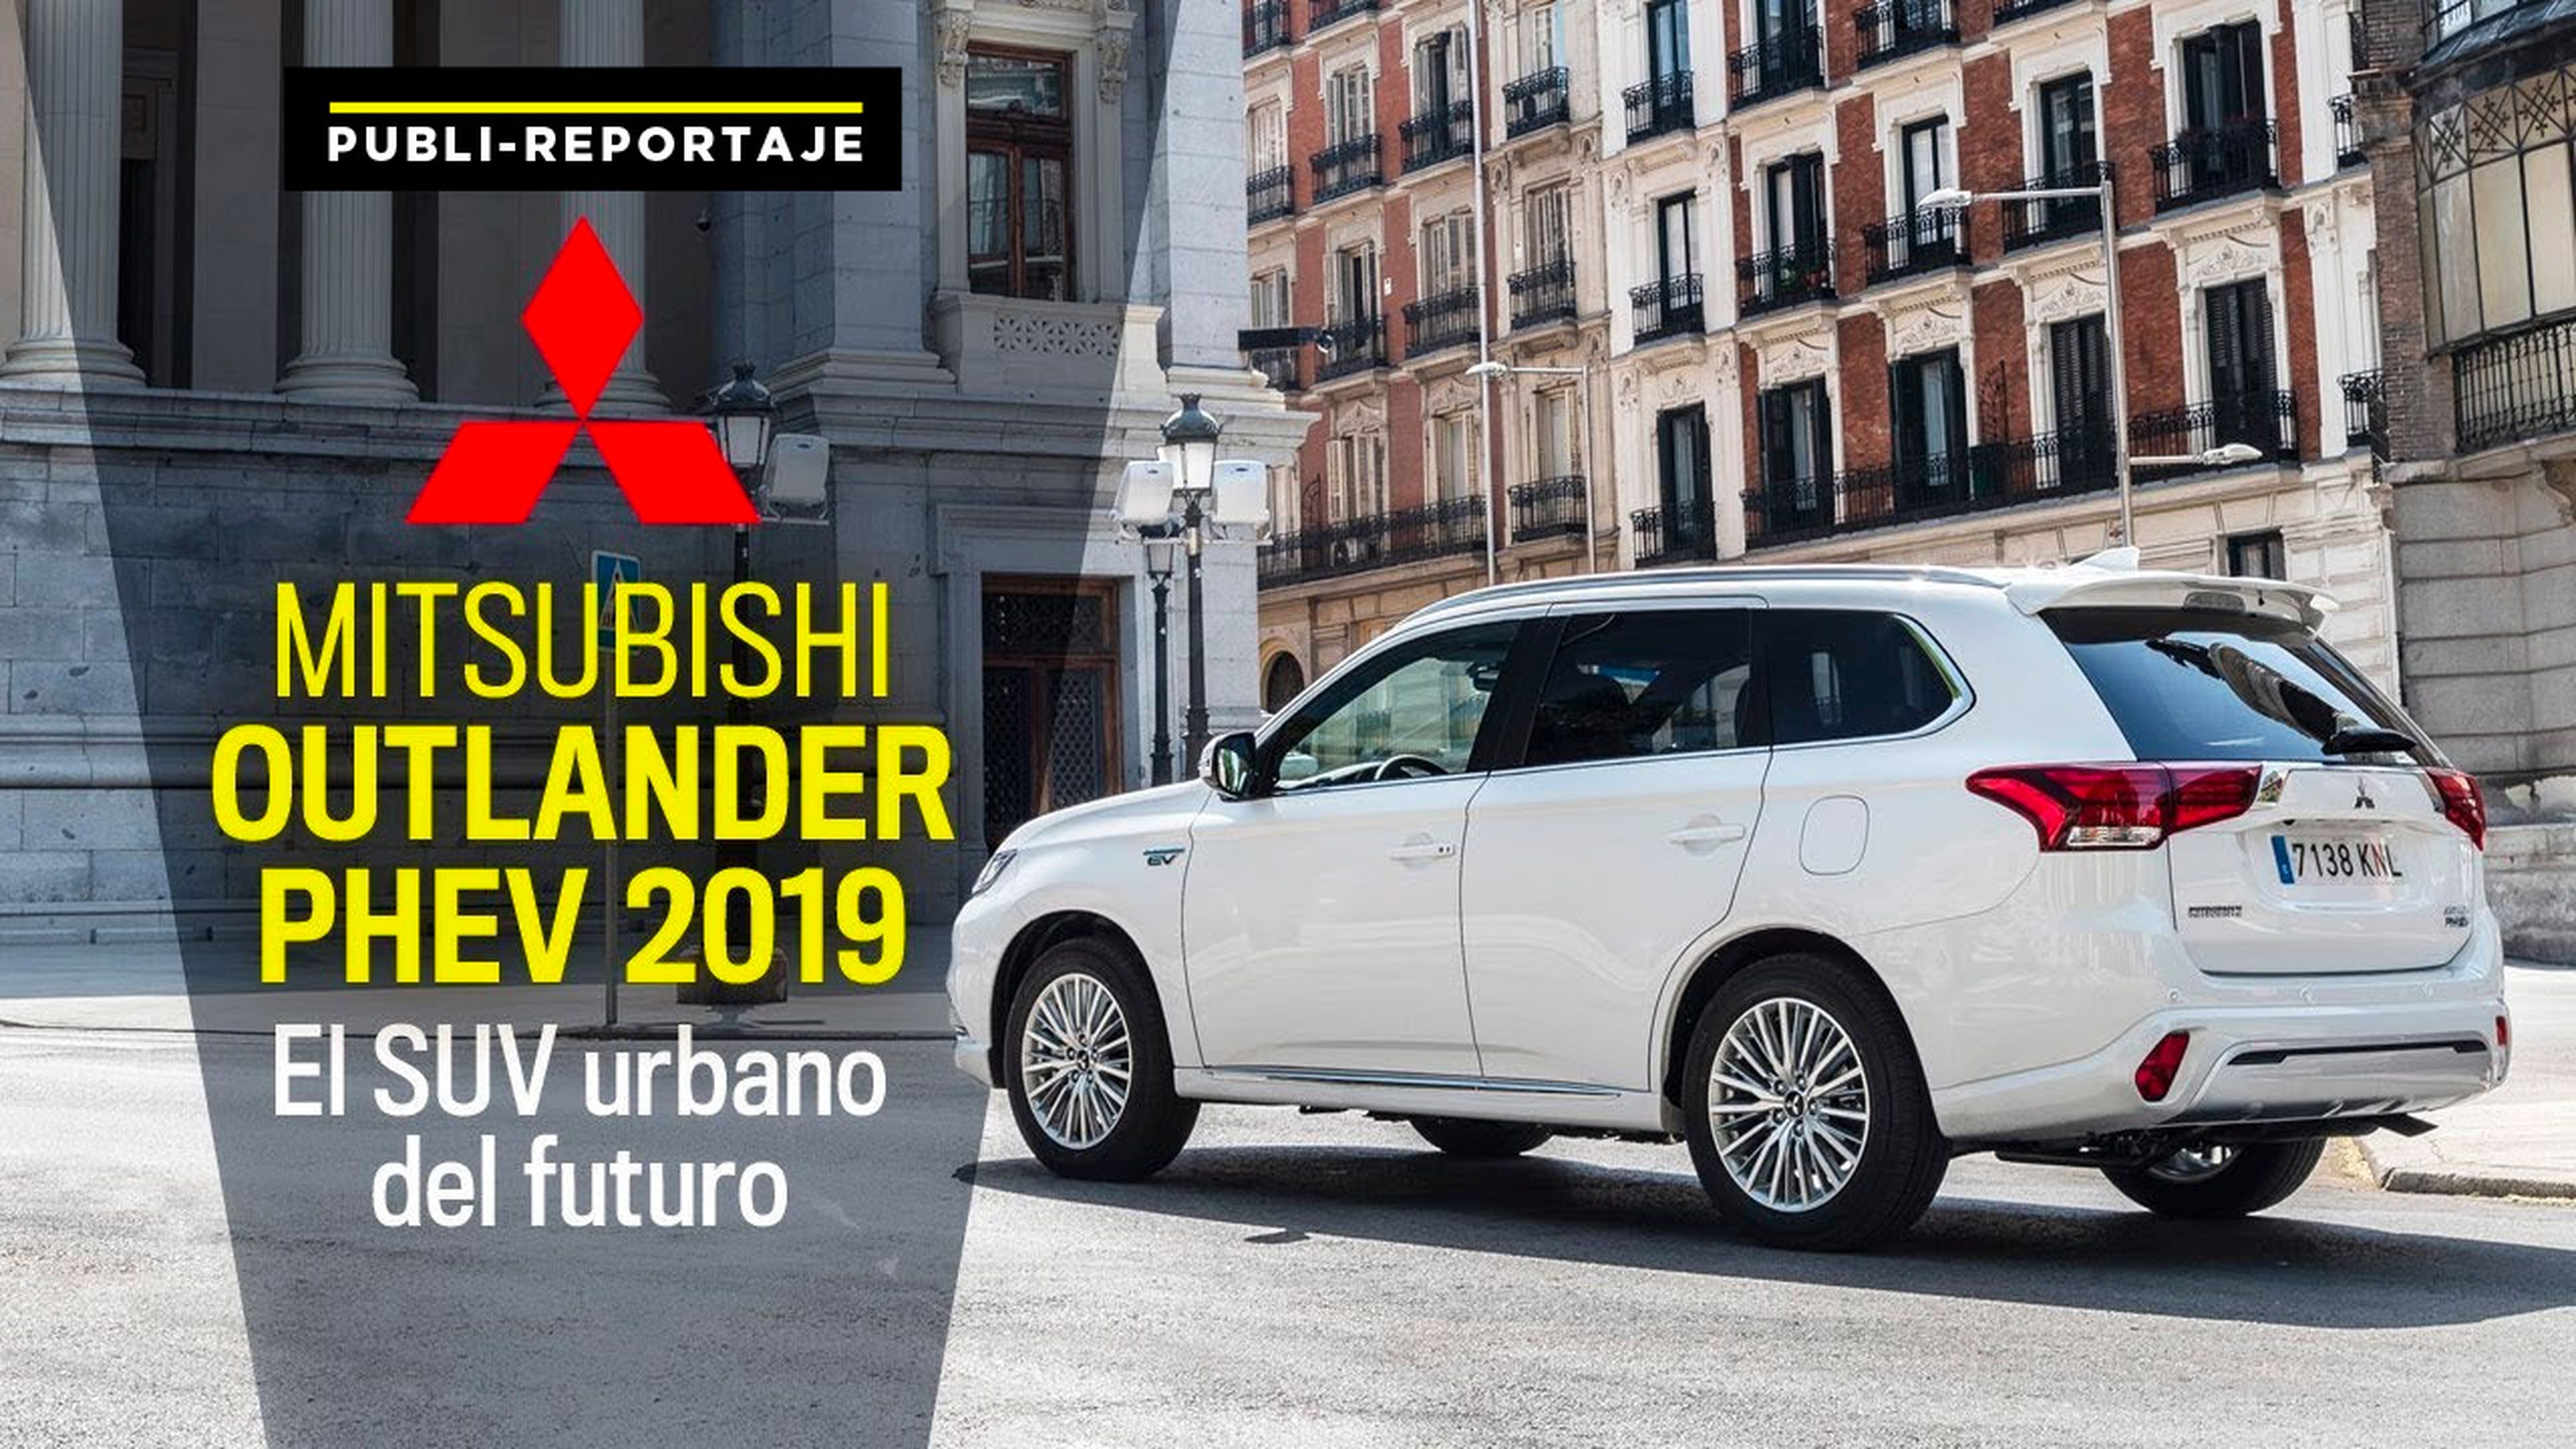 Mitsubishi Outlander PHEV 2019: El SUV urbano del futuro